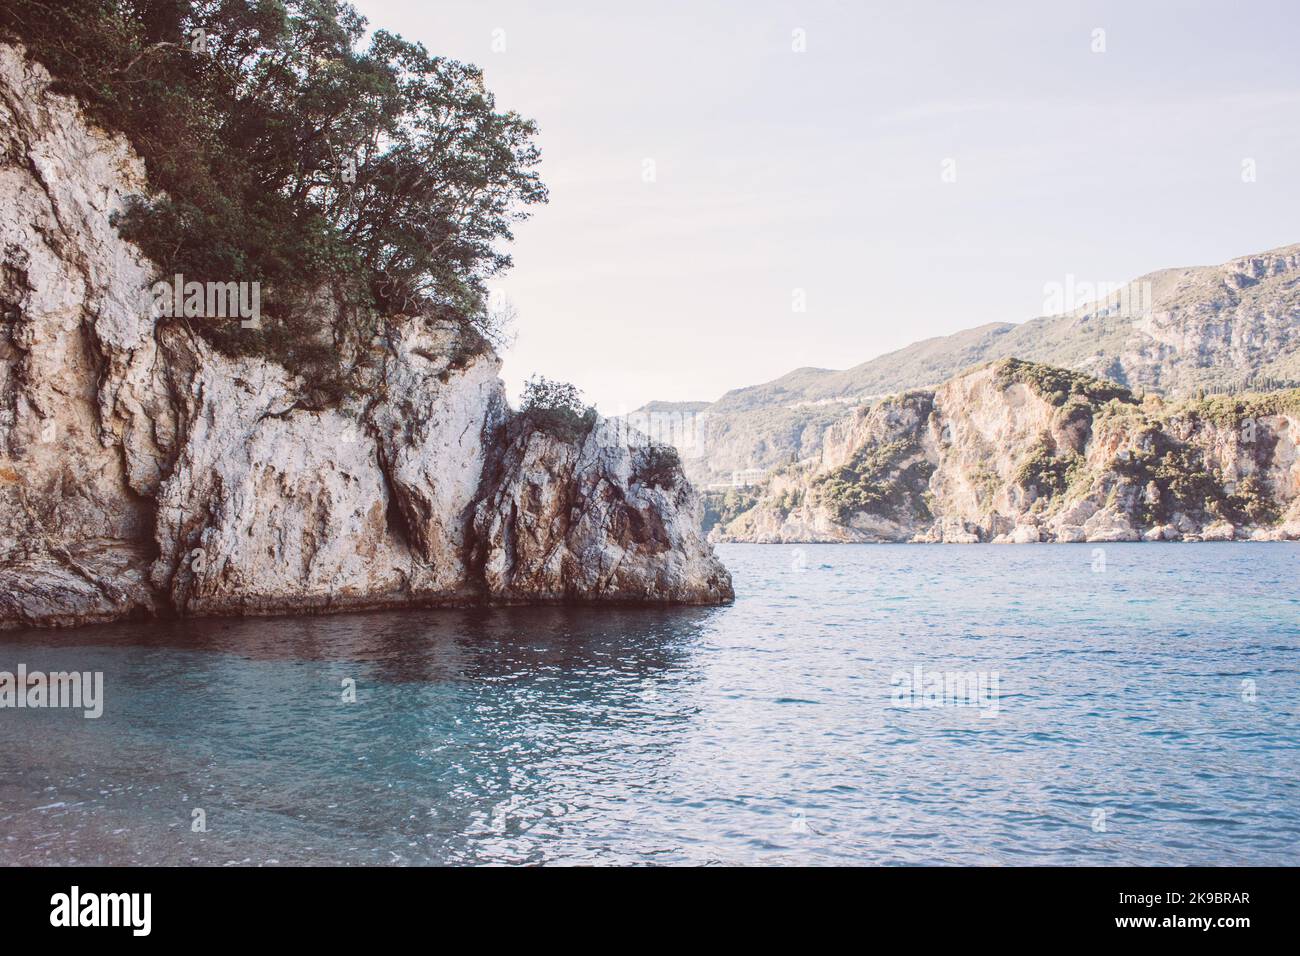 Korfu, Griechenland. Ein riesiger Felsen am Strand mit blauem Wasser, auf dem grüne Pflanzen und Bäume wachsen. Stockfoto